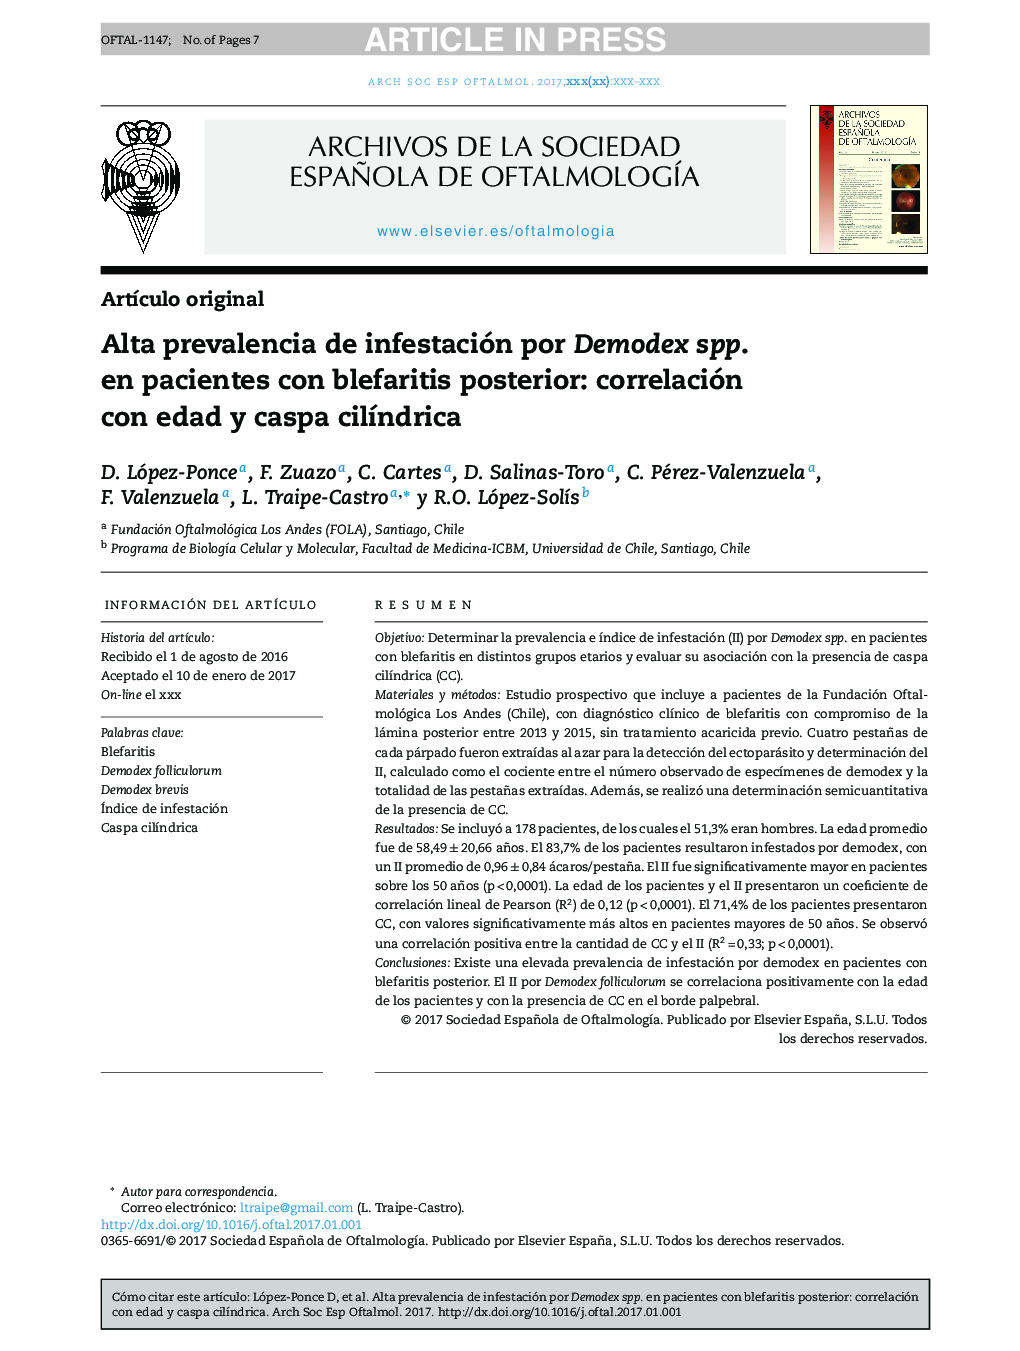 Alta prevalencia de infestación por Demodex spp. en pacientes con blefaritis posterior: correlación con edad y caspa cilÃ­ndrica